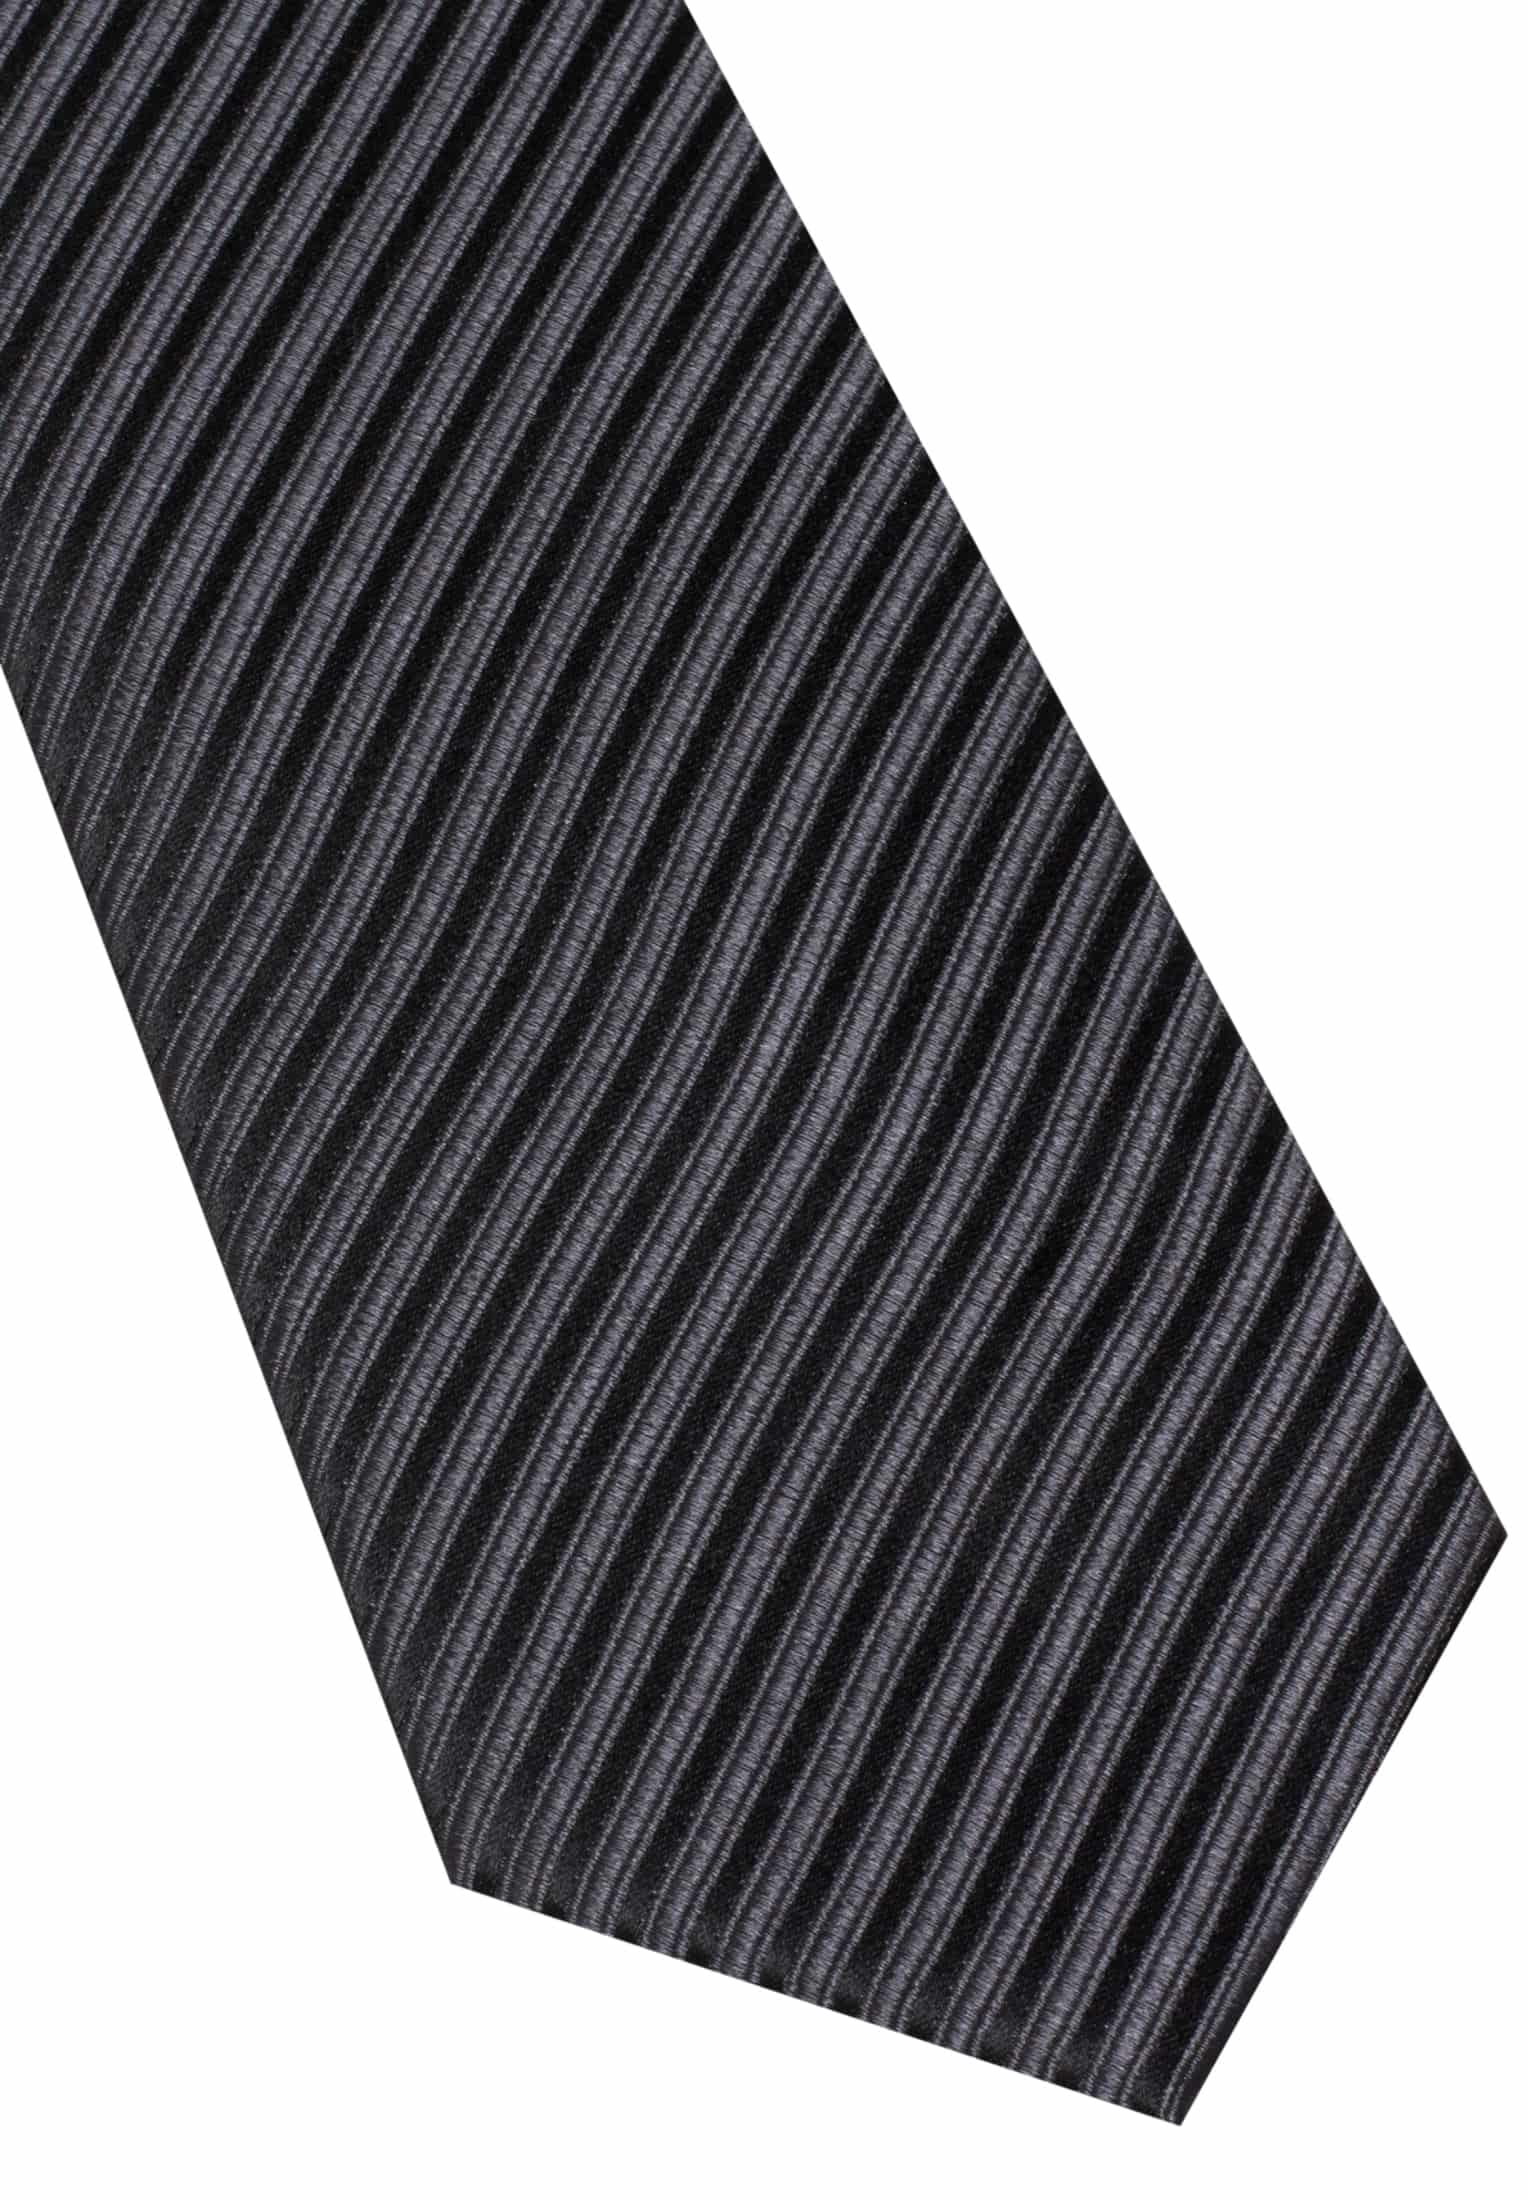 142 schwarz in schwarz | 1AC00528-03-91-142 | unifarben | Krawatte